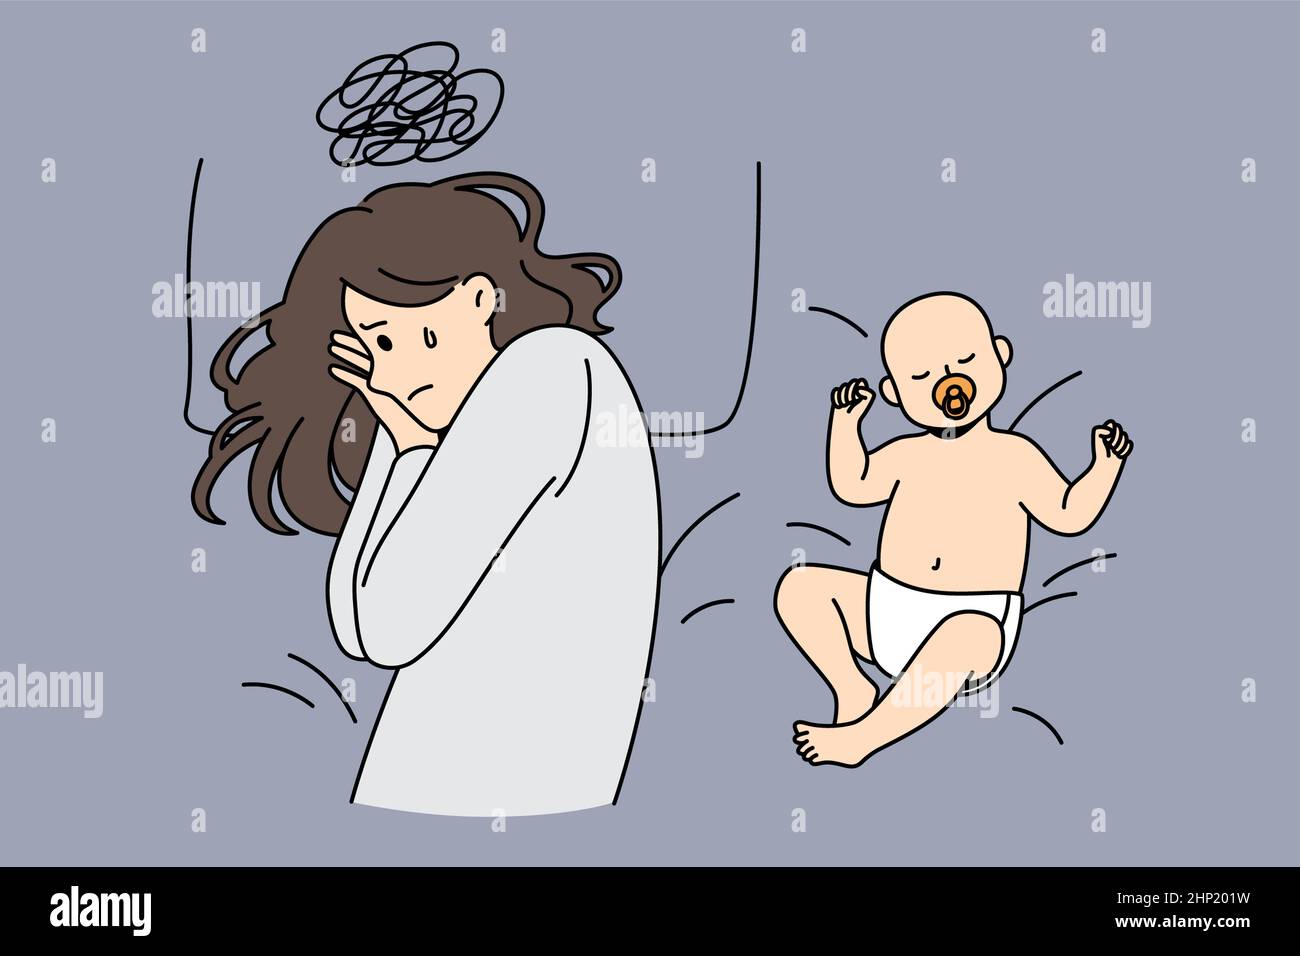 Postpartale Depression und Elternschaft Konzept. Junge depressive traurige Mutter mit harten Gedanken im Bett liegend mit glücklich schlafenden Baby in der Nähe Vektor-illus Stockfoto